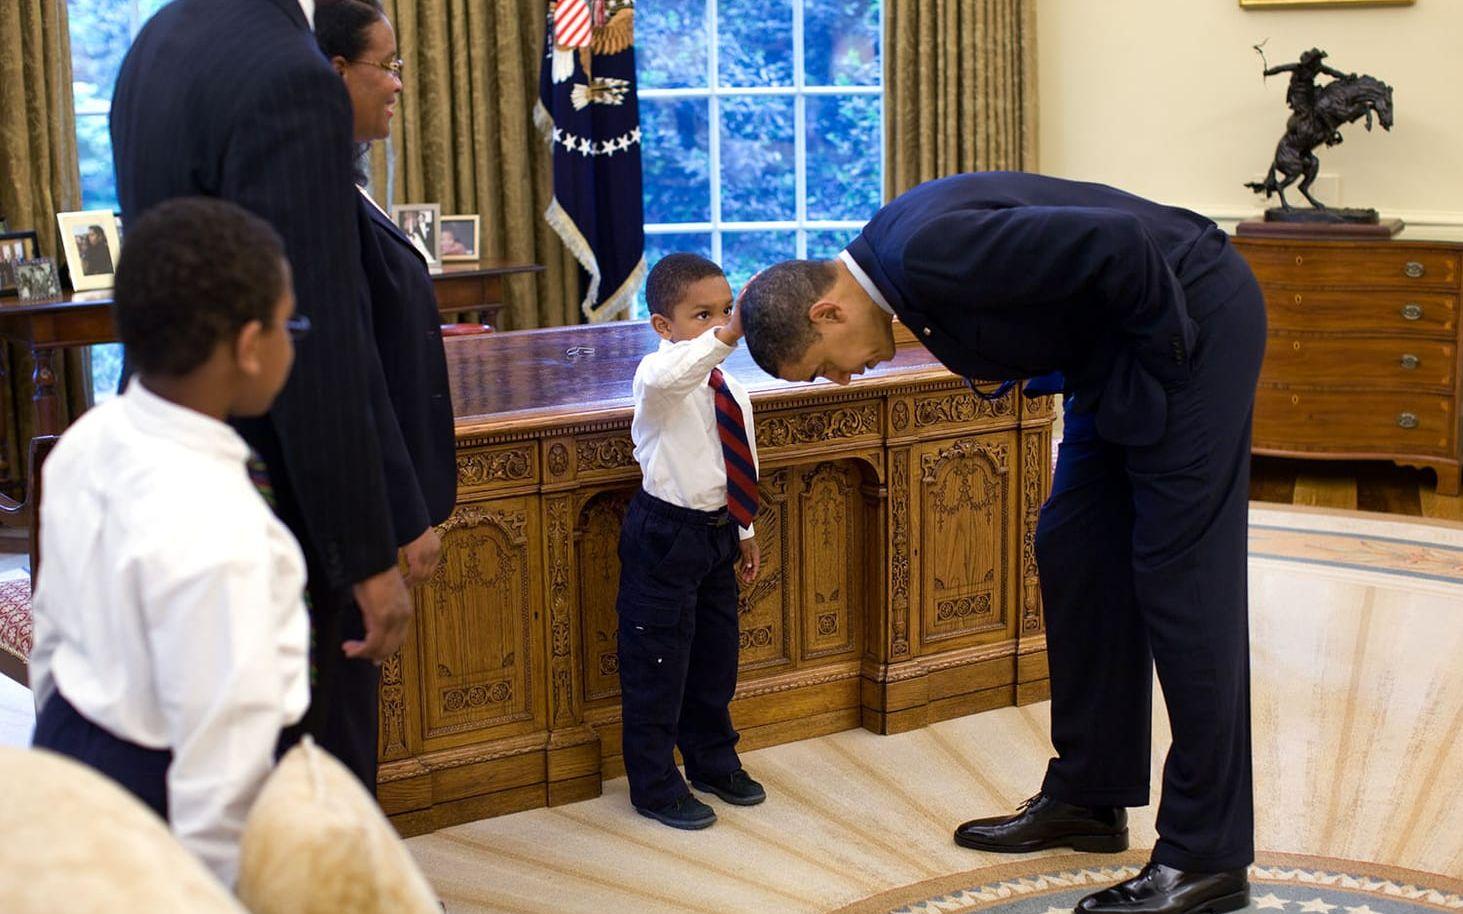 8 maj, 2009: Sonen till en Vita Huset-anställd tog med sig sin son till jobbet för att ta en bild med presidenten. Pojken, som nyligen varit hos frisören, frågade om presidentens hår känns som hans. Obama bad hon känna fter själv: "Touch it, dude". Foto: Pete Souza / Vita Huset